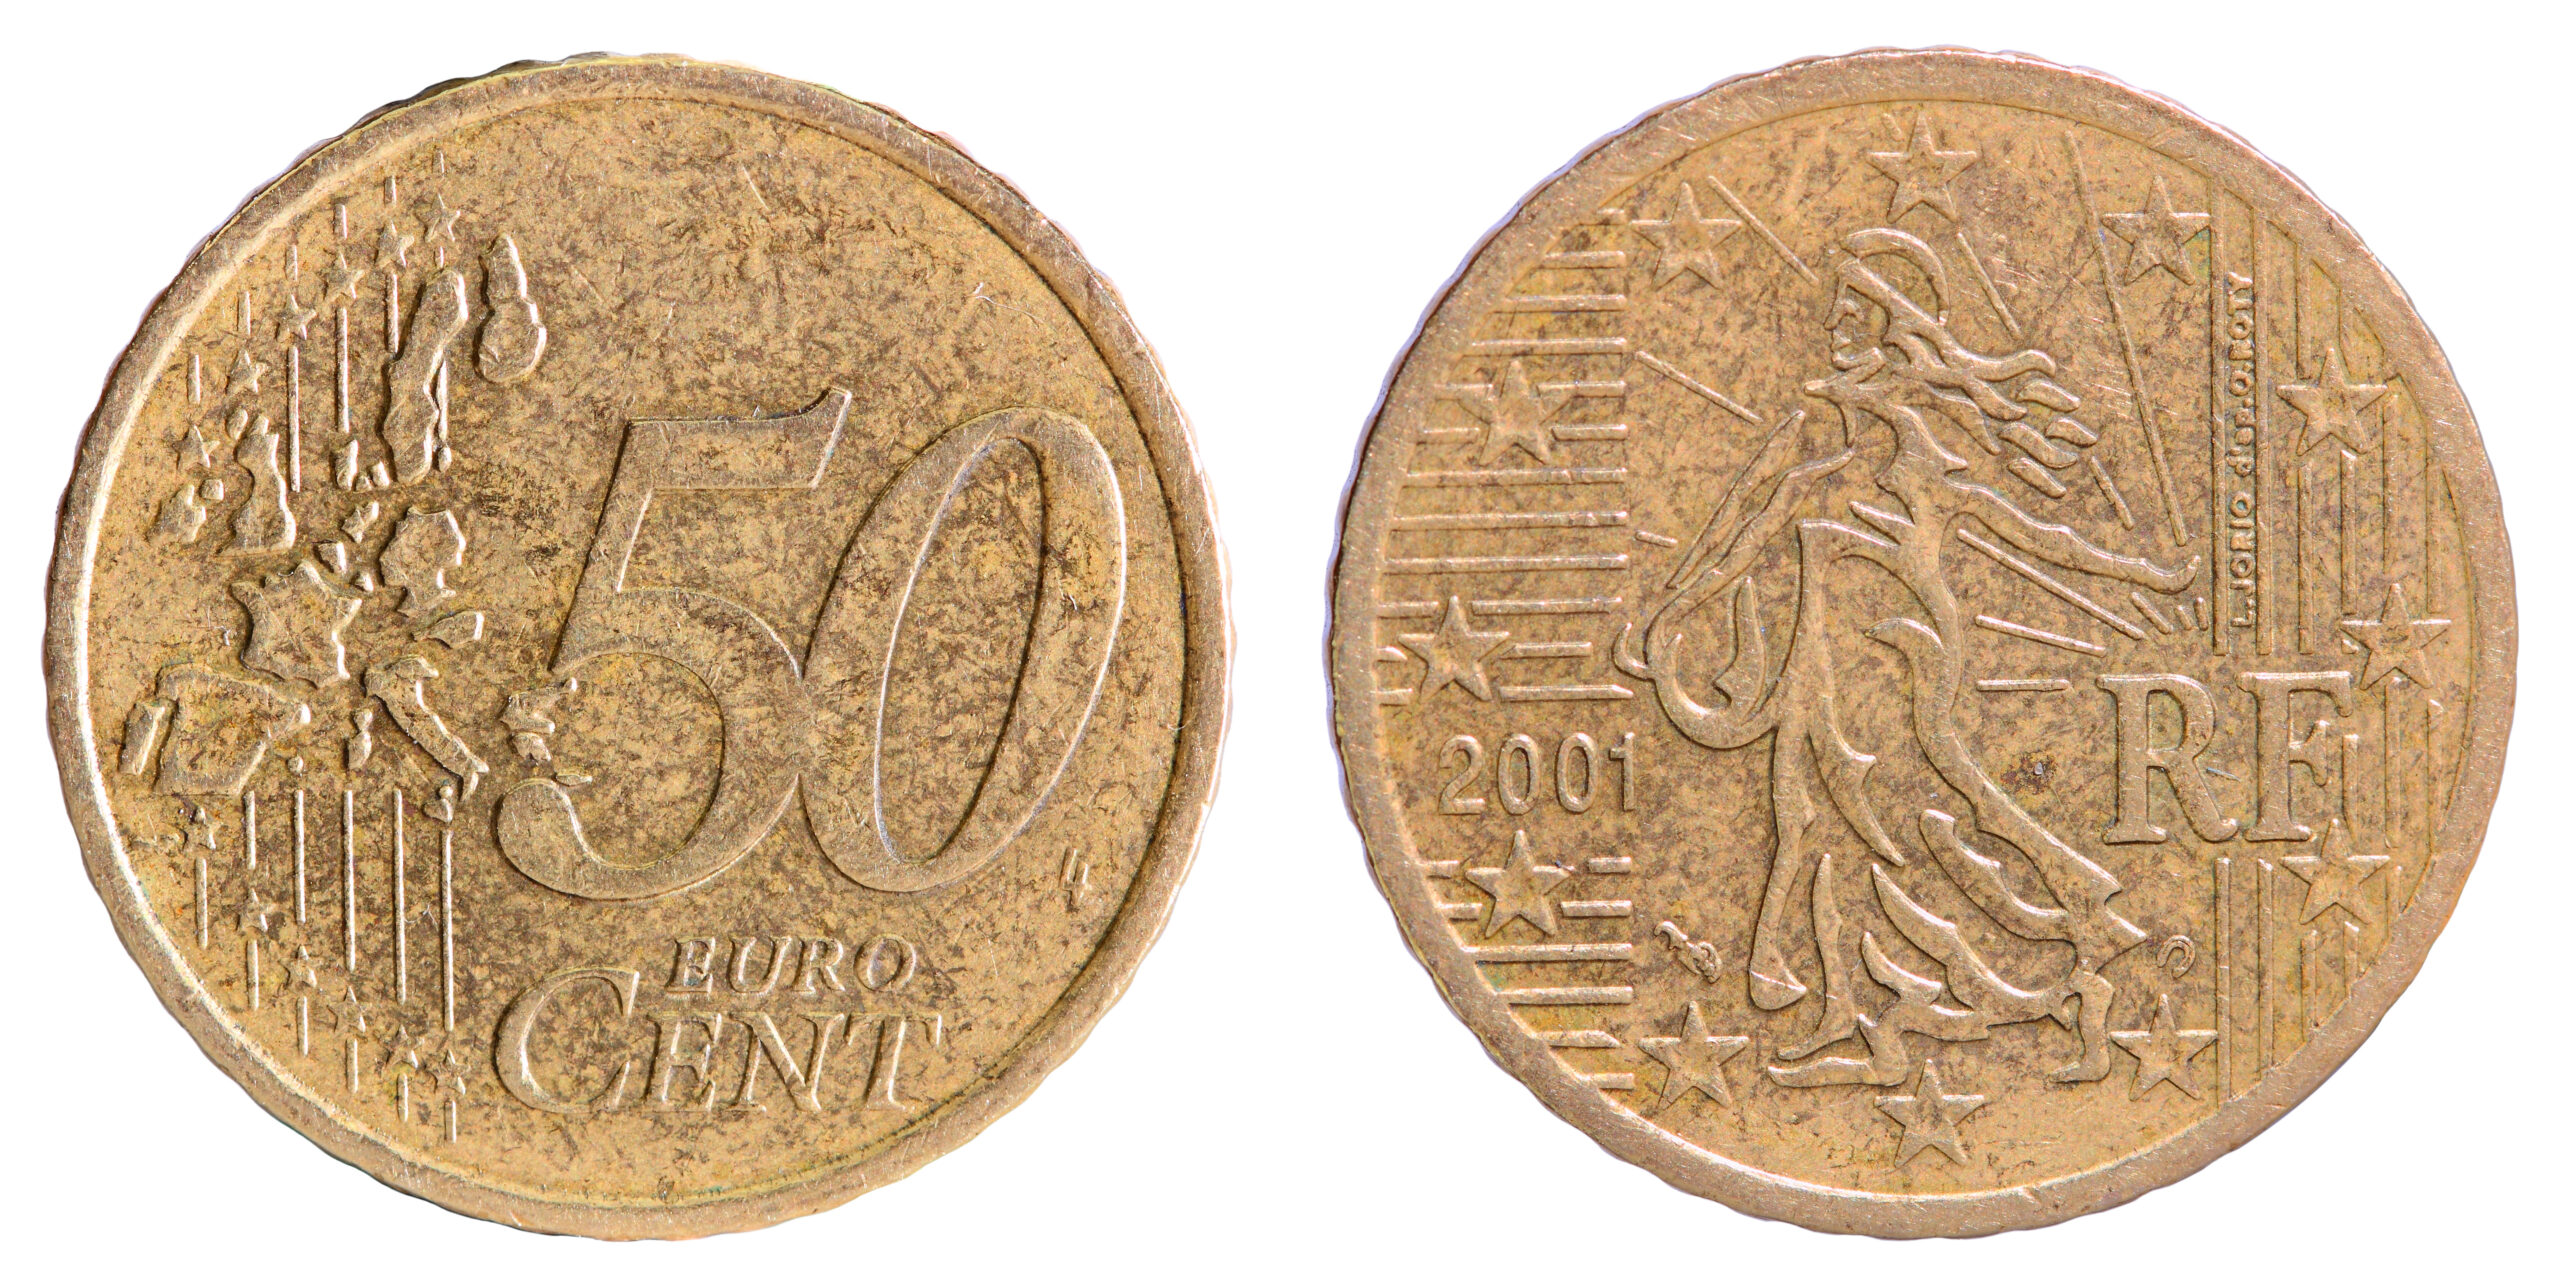 Monete da 50 centesimi, ecco quelle valutate tantissimi soldi: i dettagli da verificare